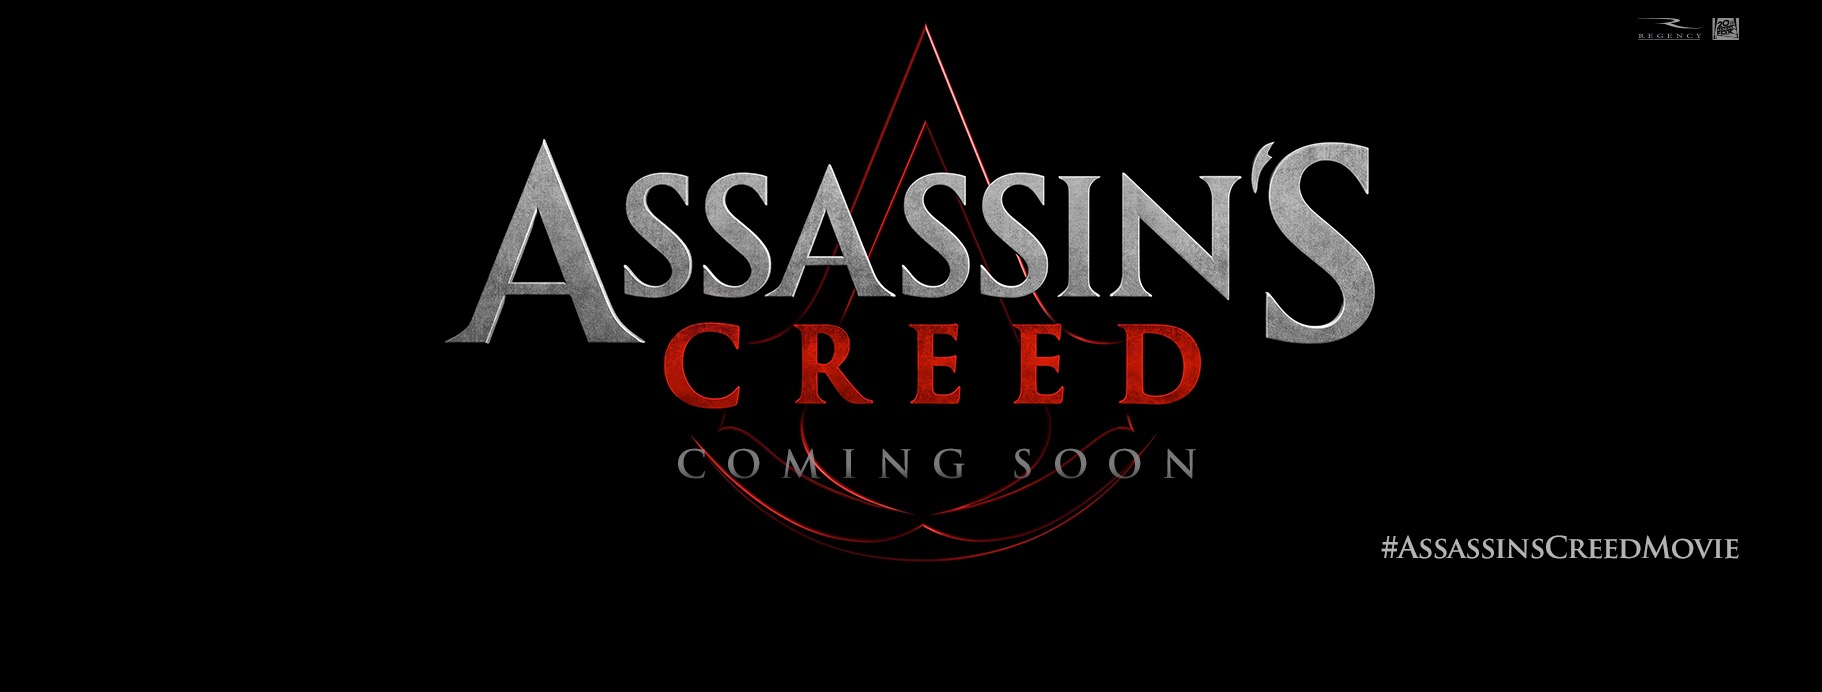 Assassins Creed, nuevas imágenes y mañana primer trailer 